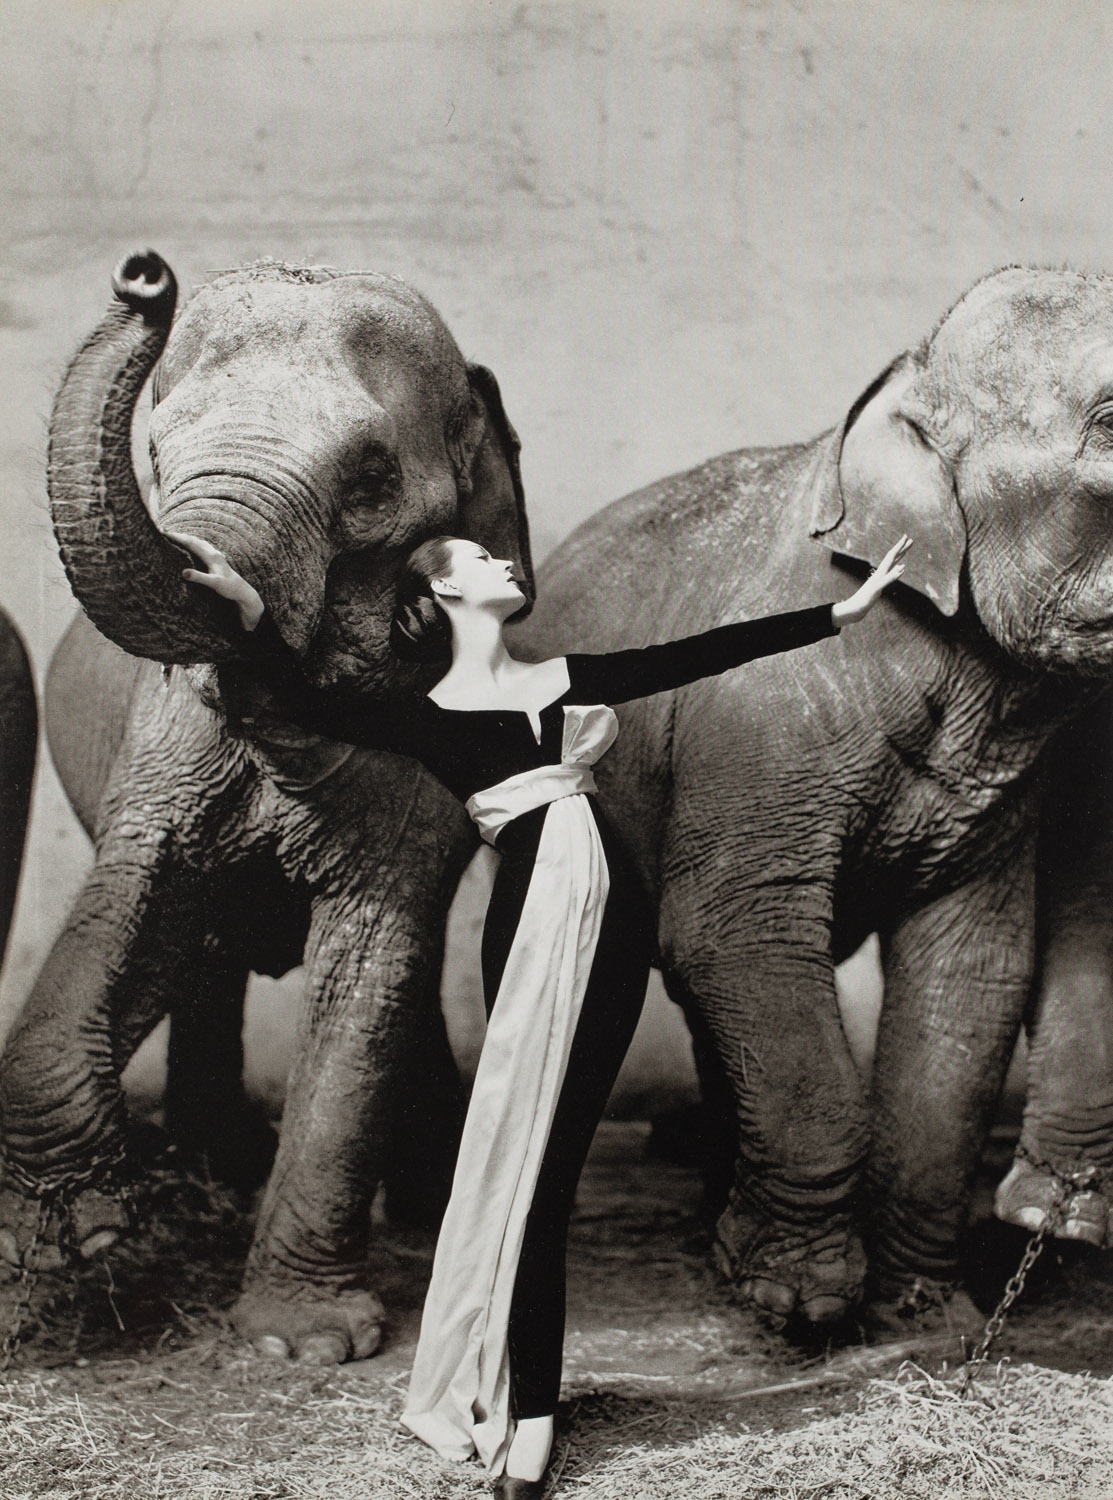 Dovima with Elephants - Richard Avedon